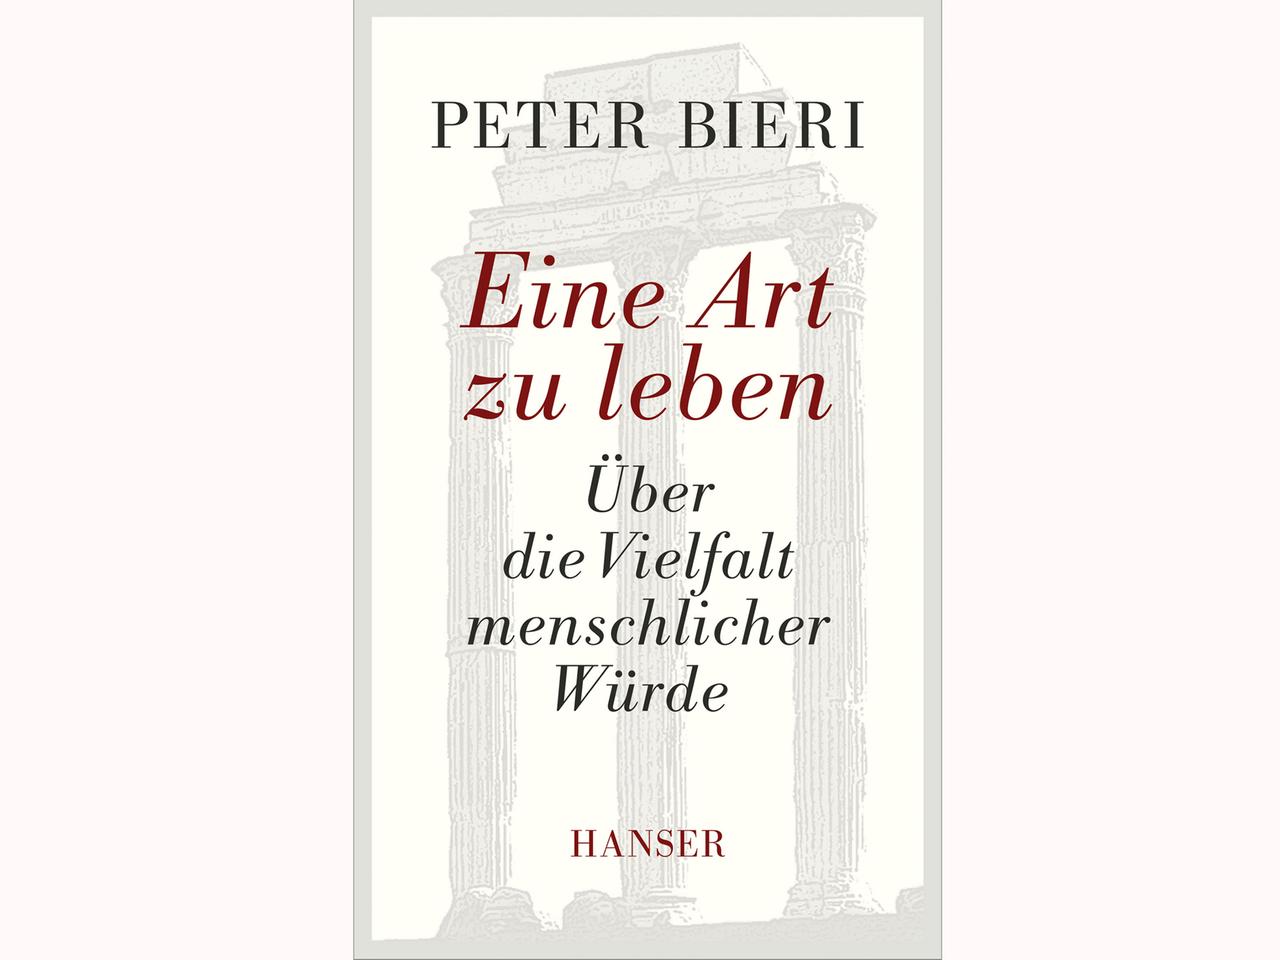 Cover: Peter Bieri "Eine Art zu leben"